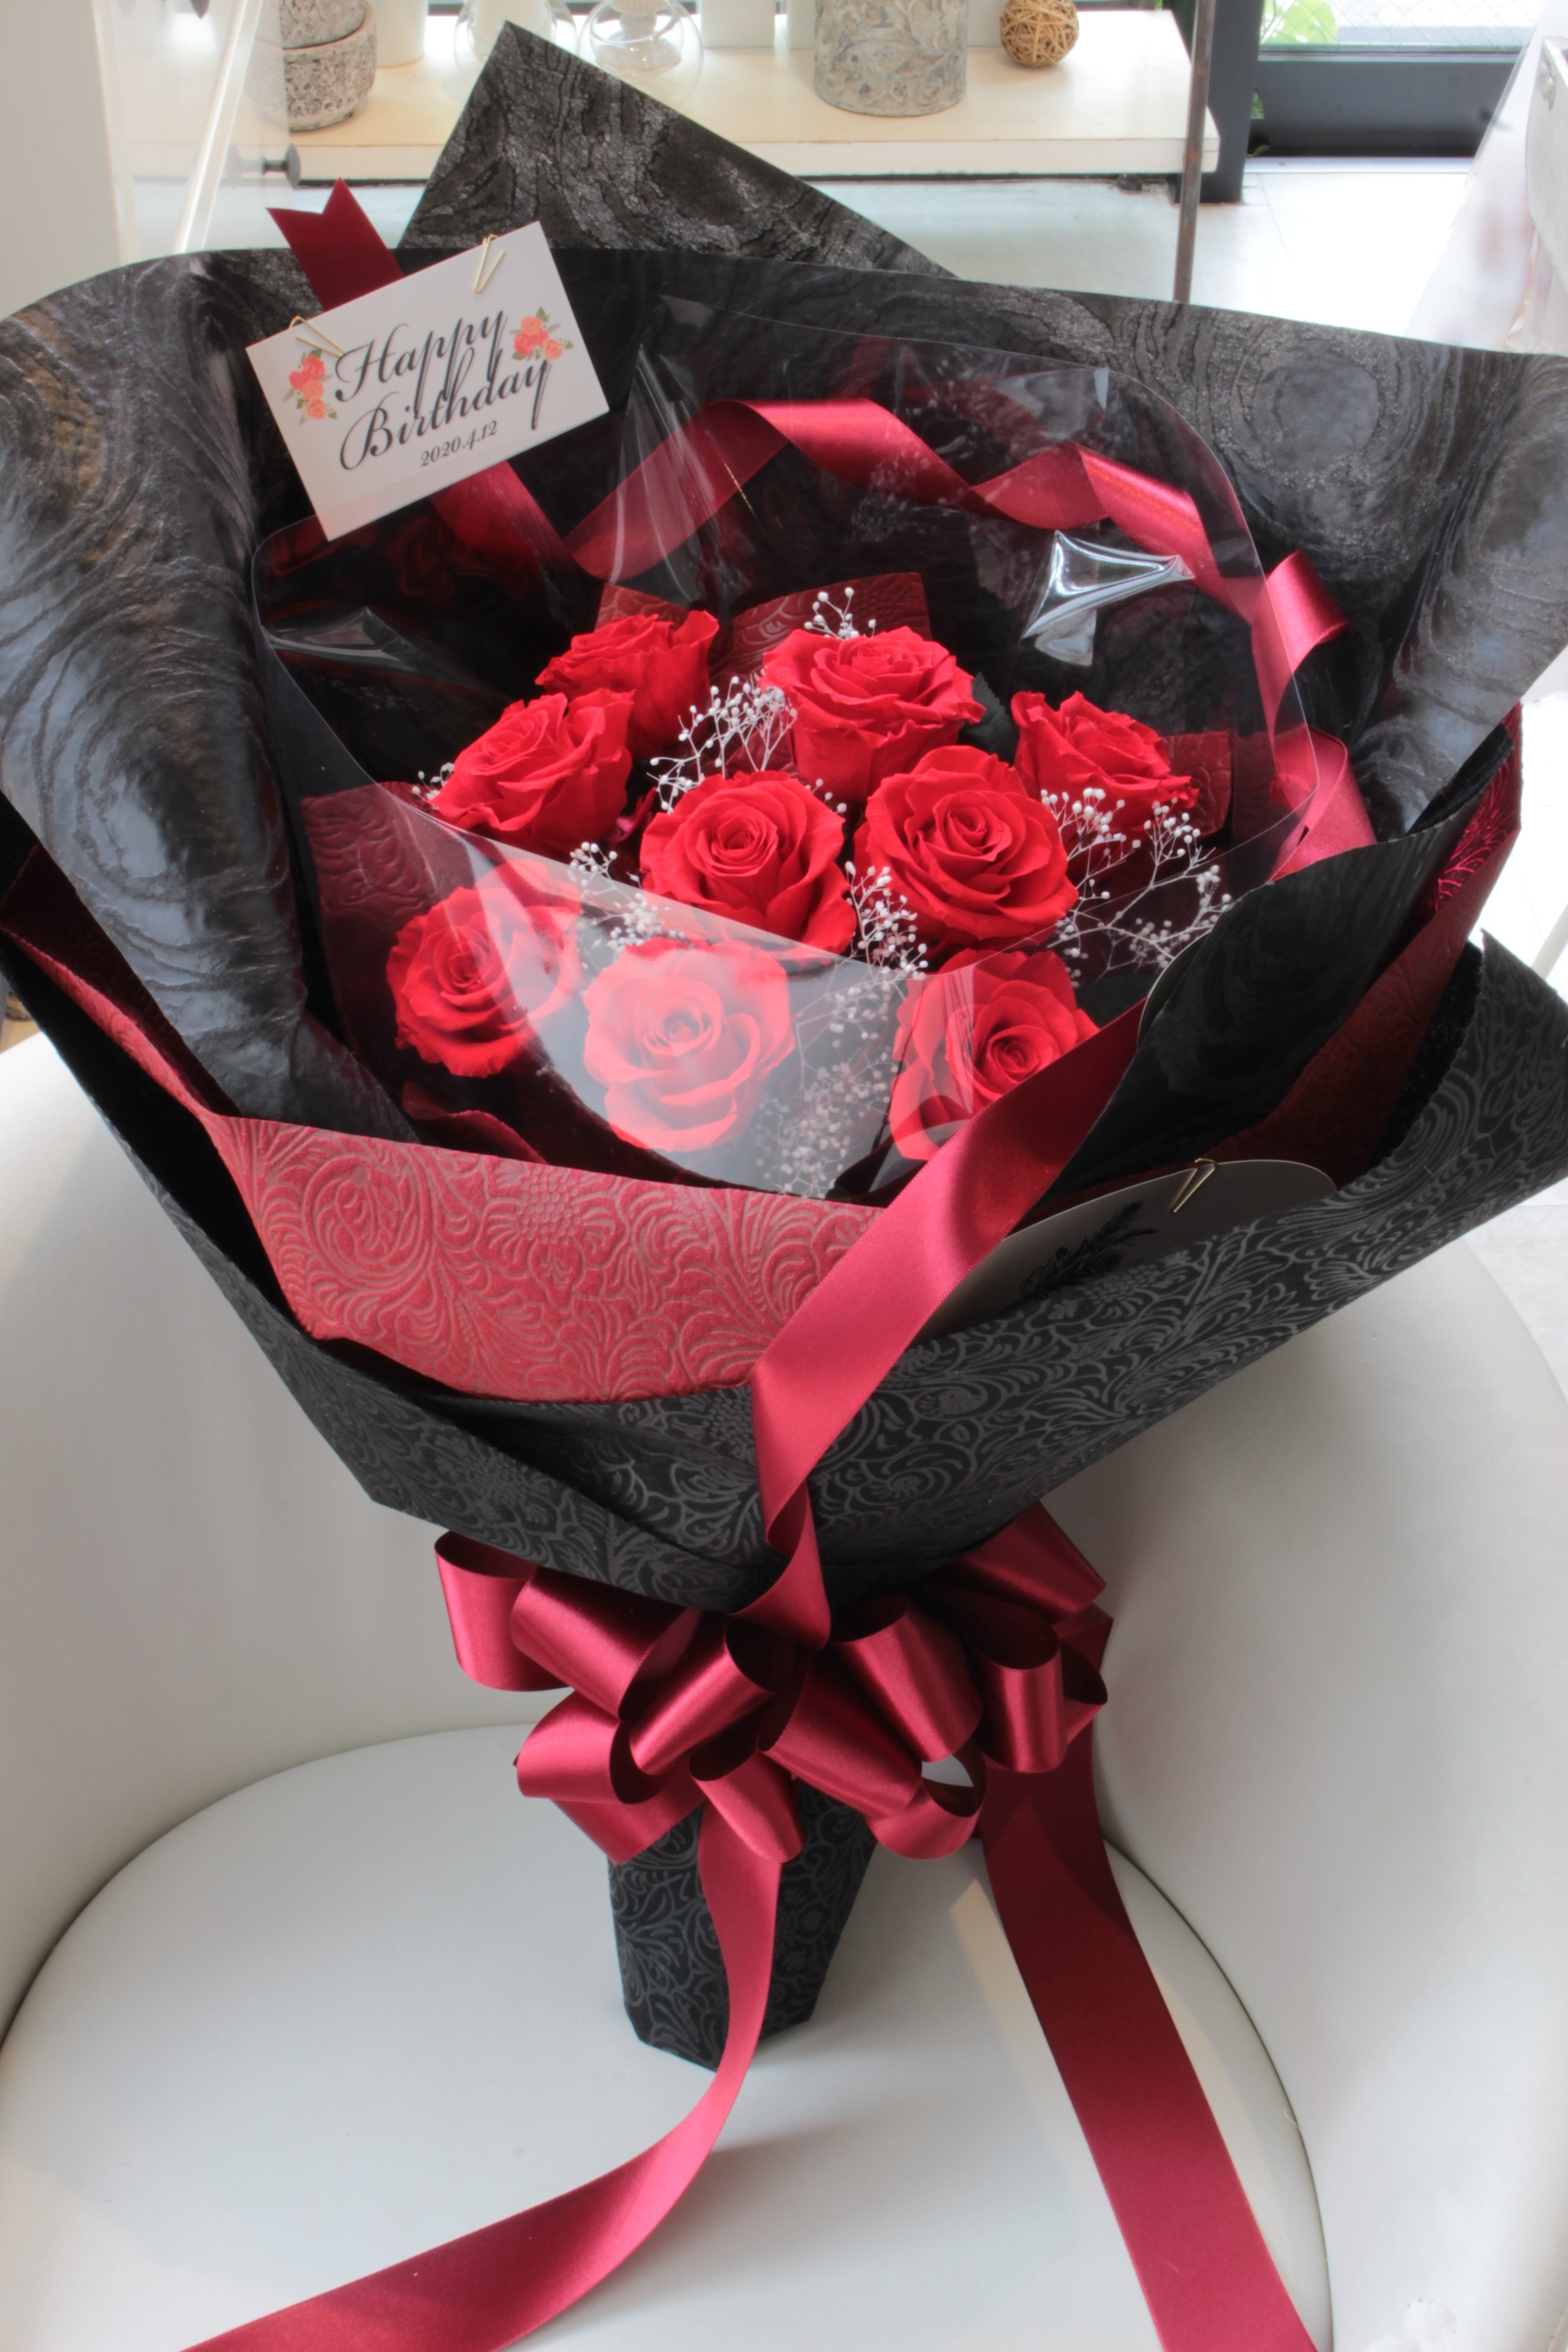 12本の赤薔薇の花束 ダーズンローズ 福岡のプリザーブドフラワー専門店 Rosejunoローズユノwebshop ネットショッピング